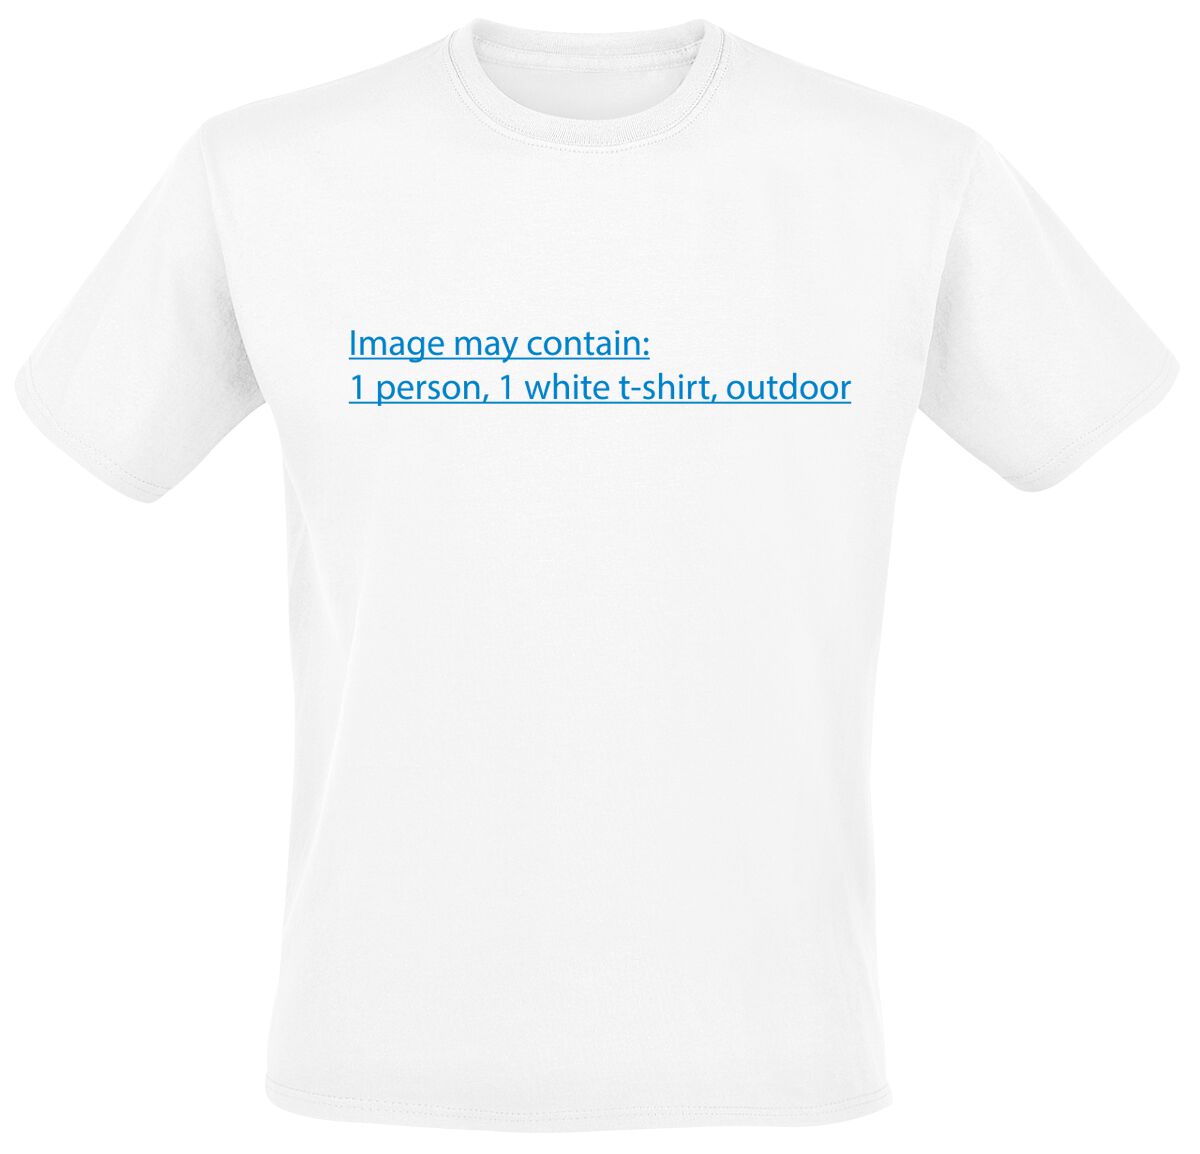 T-Shirt Manches courtes Fun de Slogans - Image May Contain - S à 5XL - pour Homme - blanc